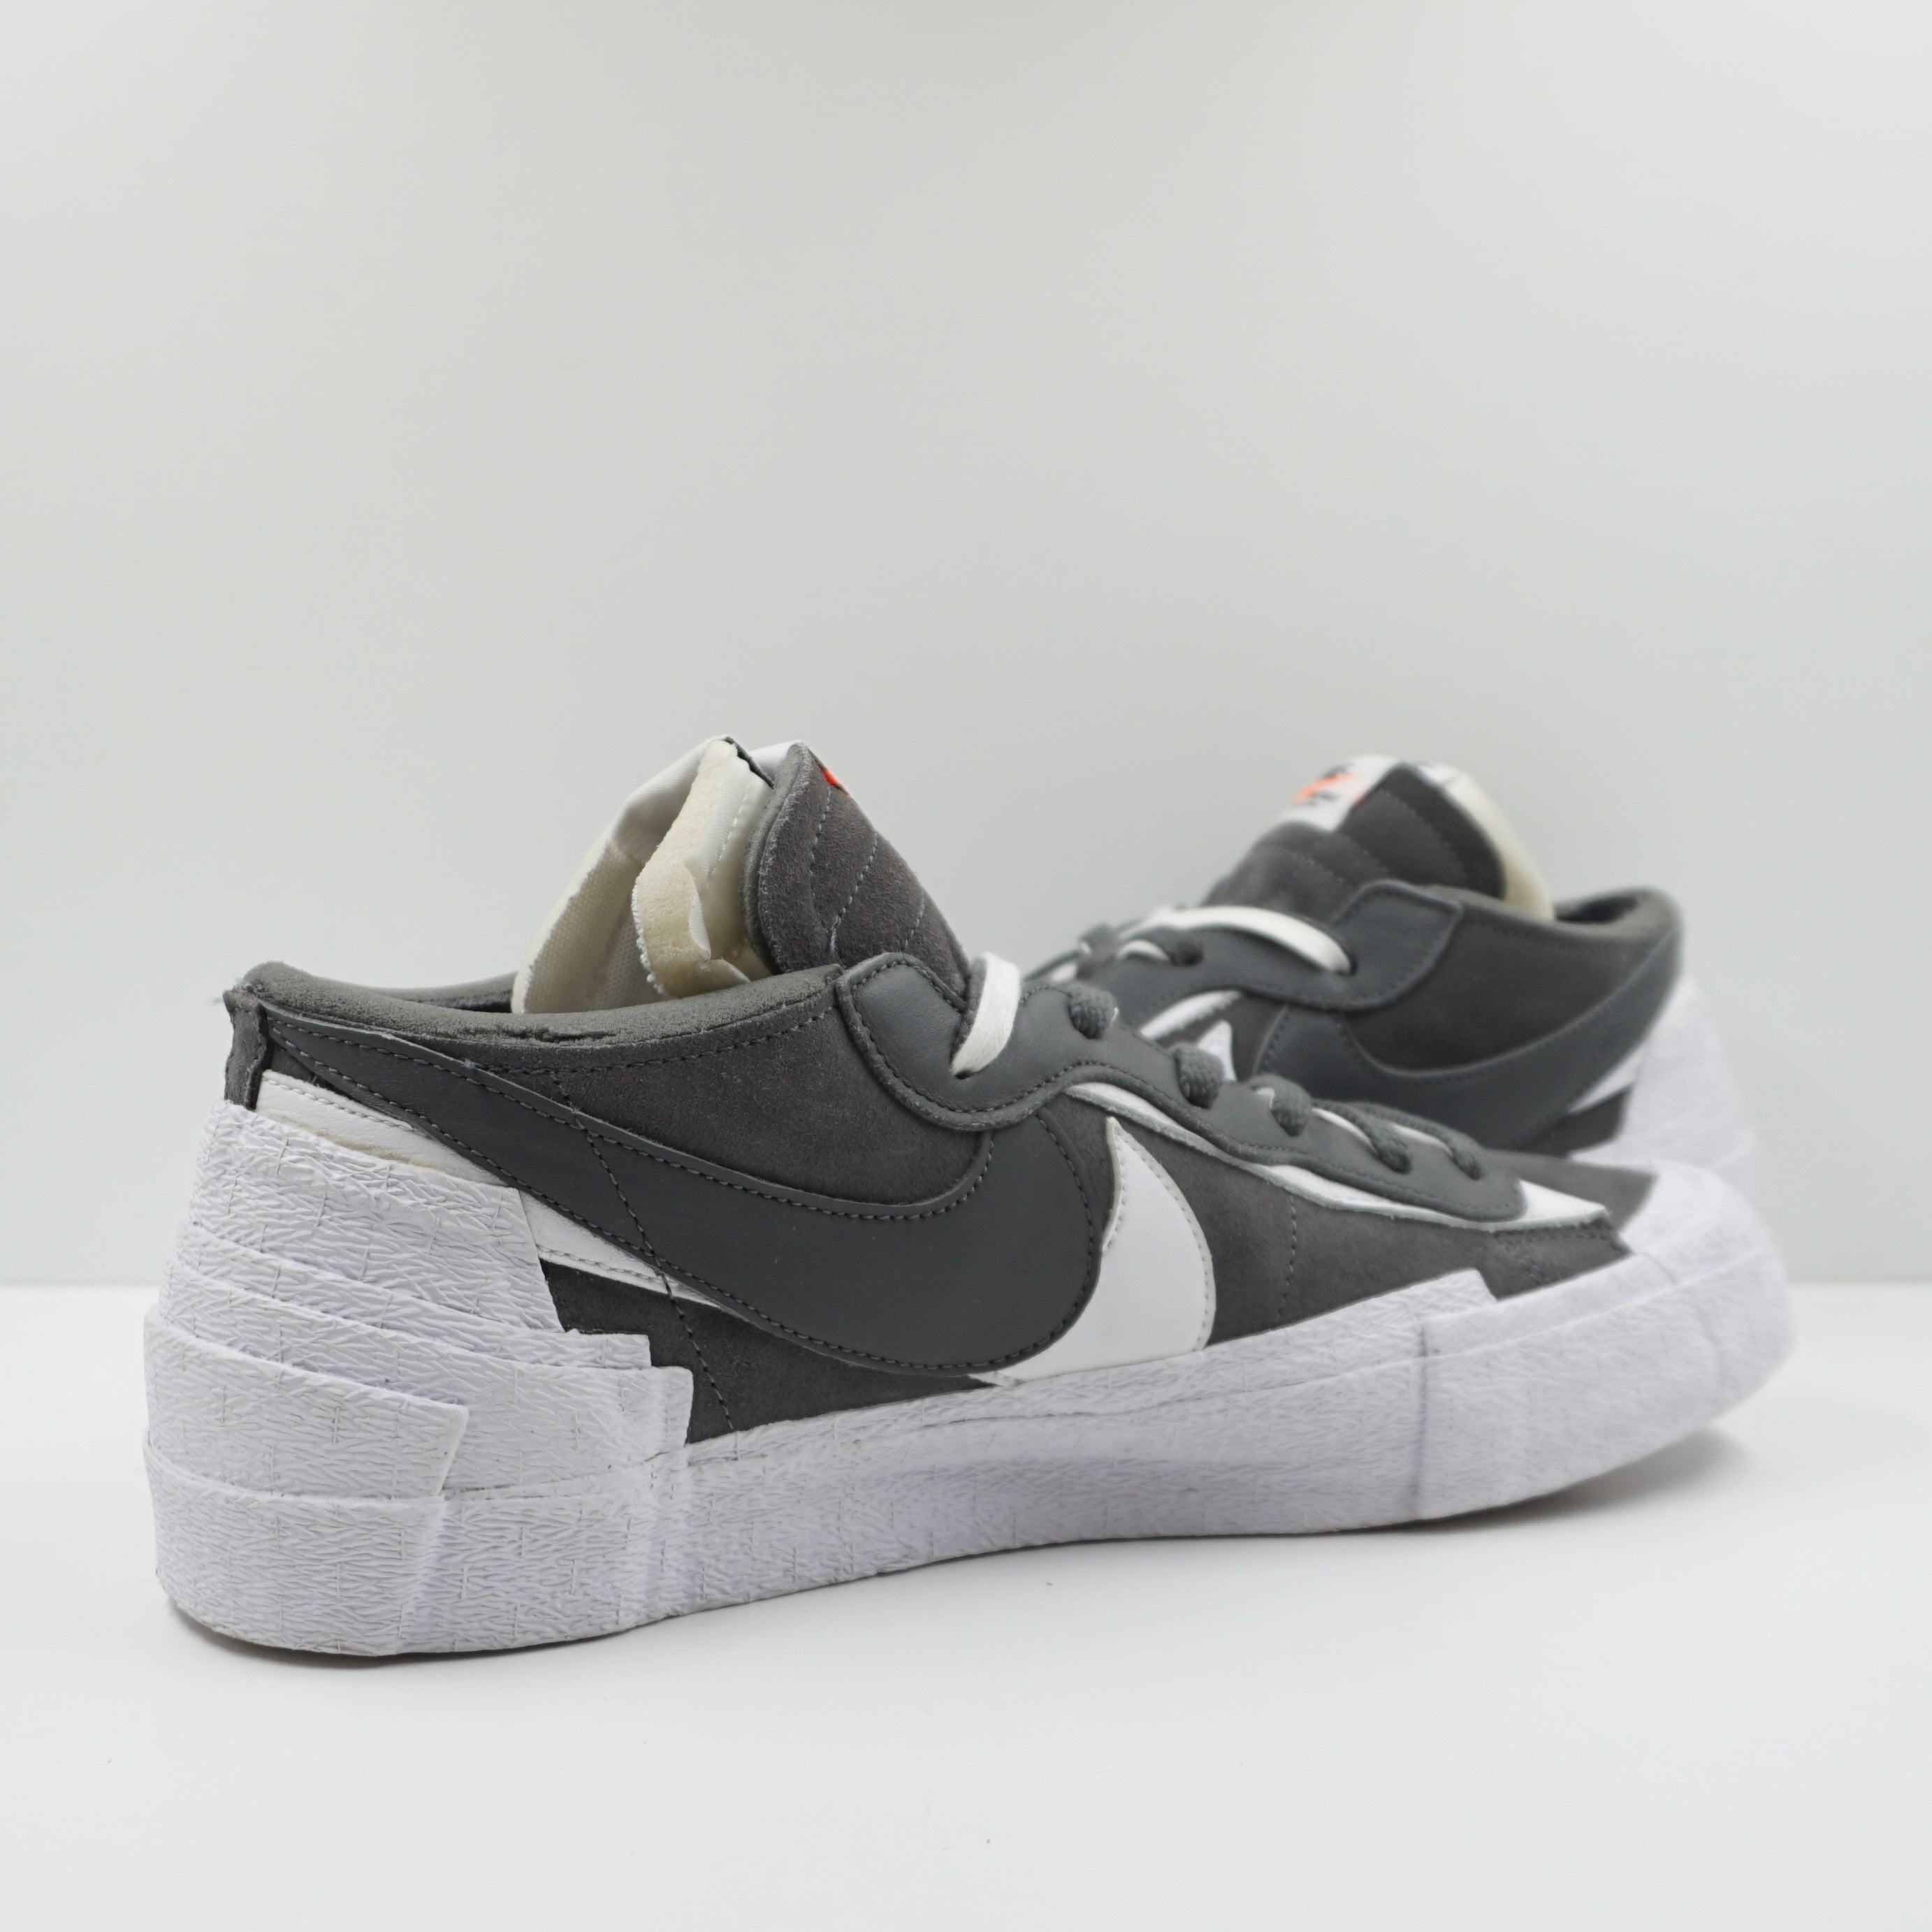 Nike Blazer Low Sacai Iron Grey